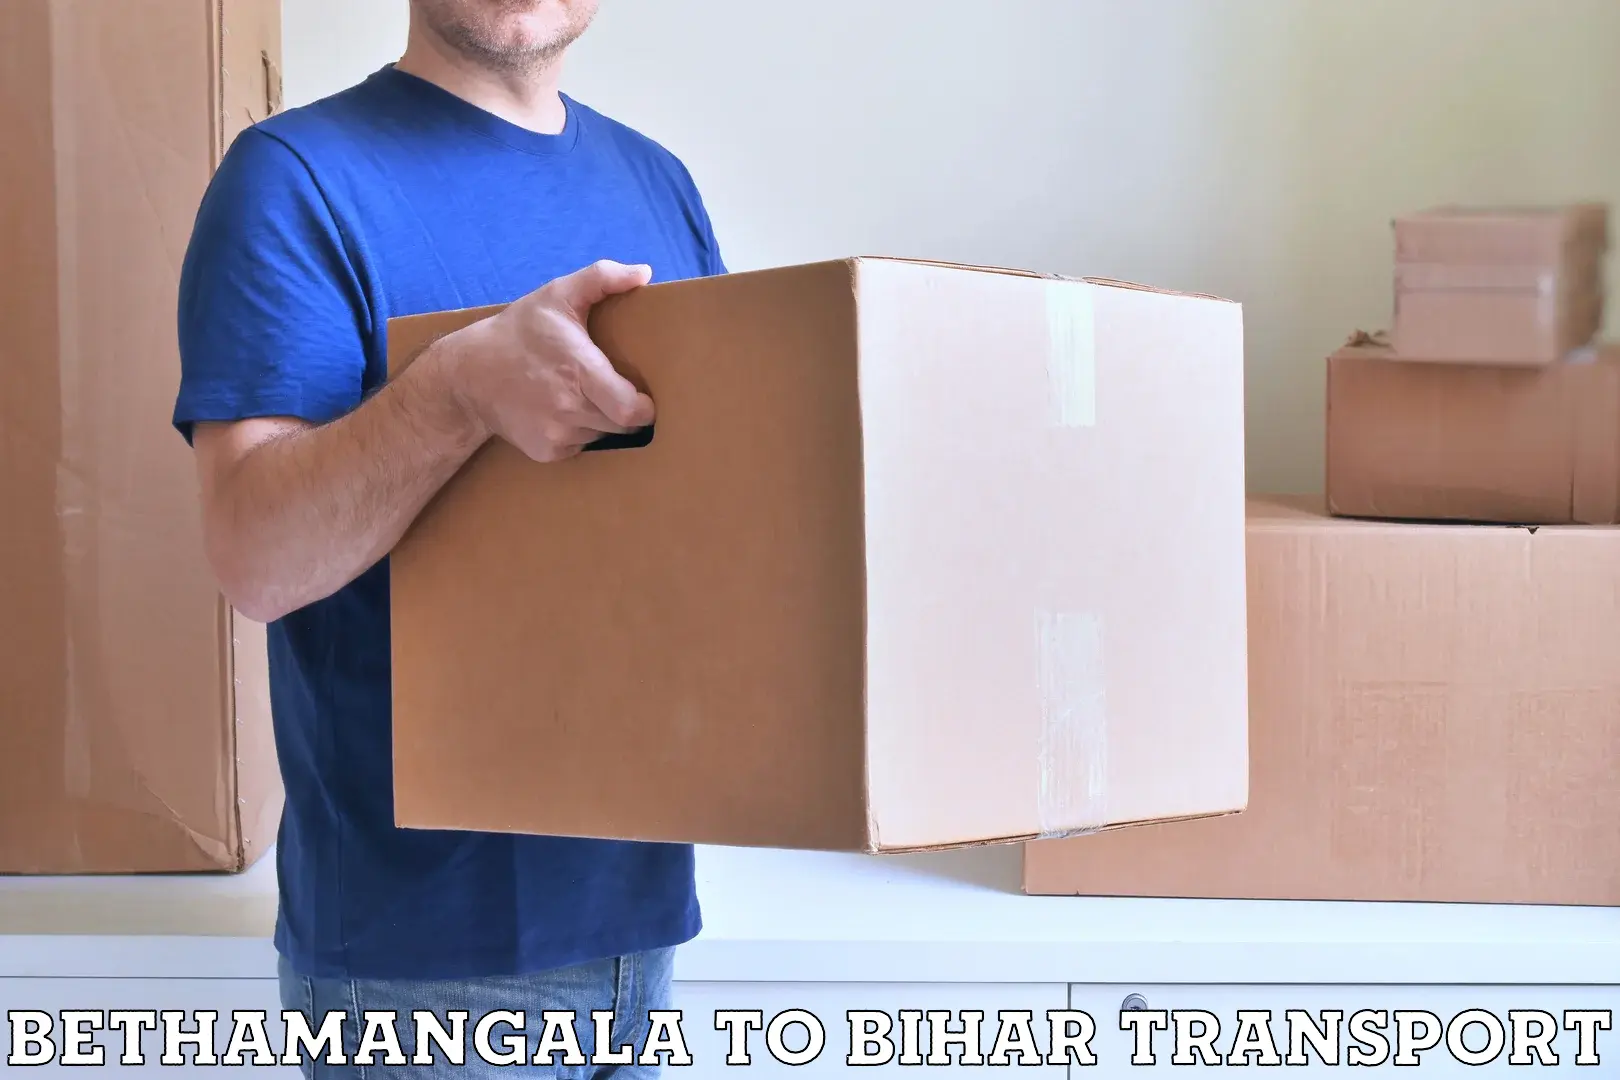 Commercial transport service Bethamangala to Bikramganj